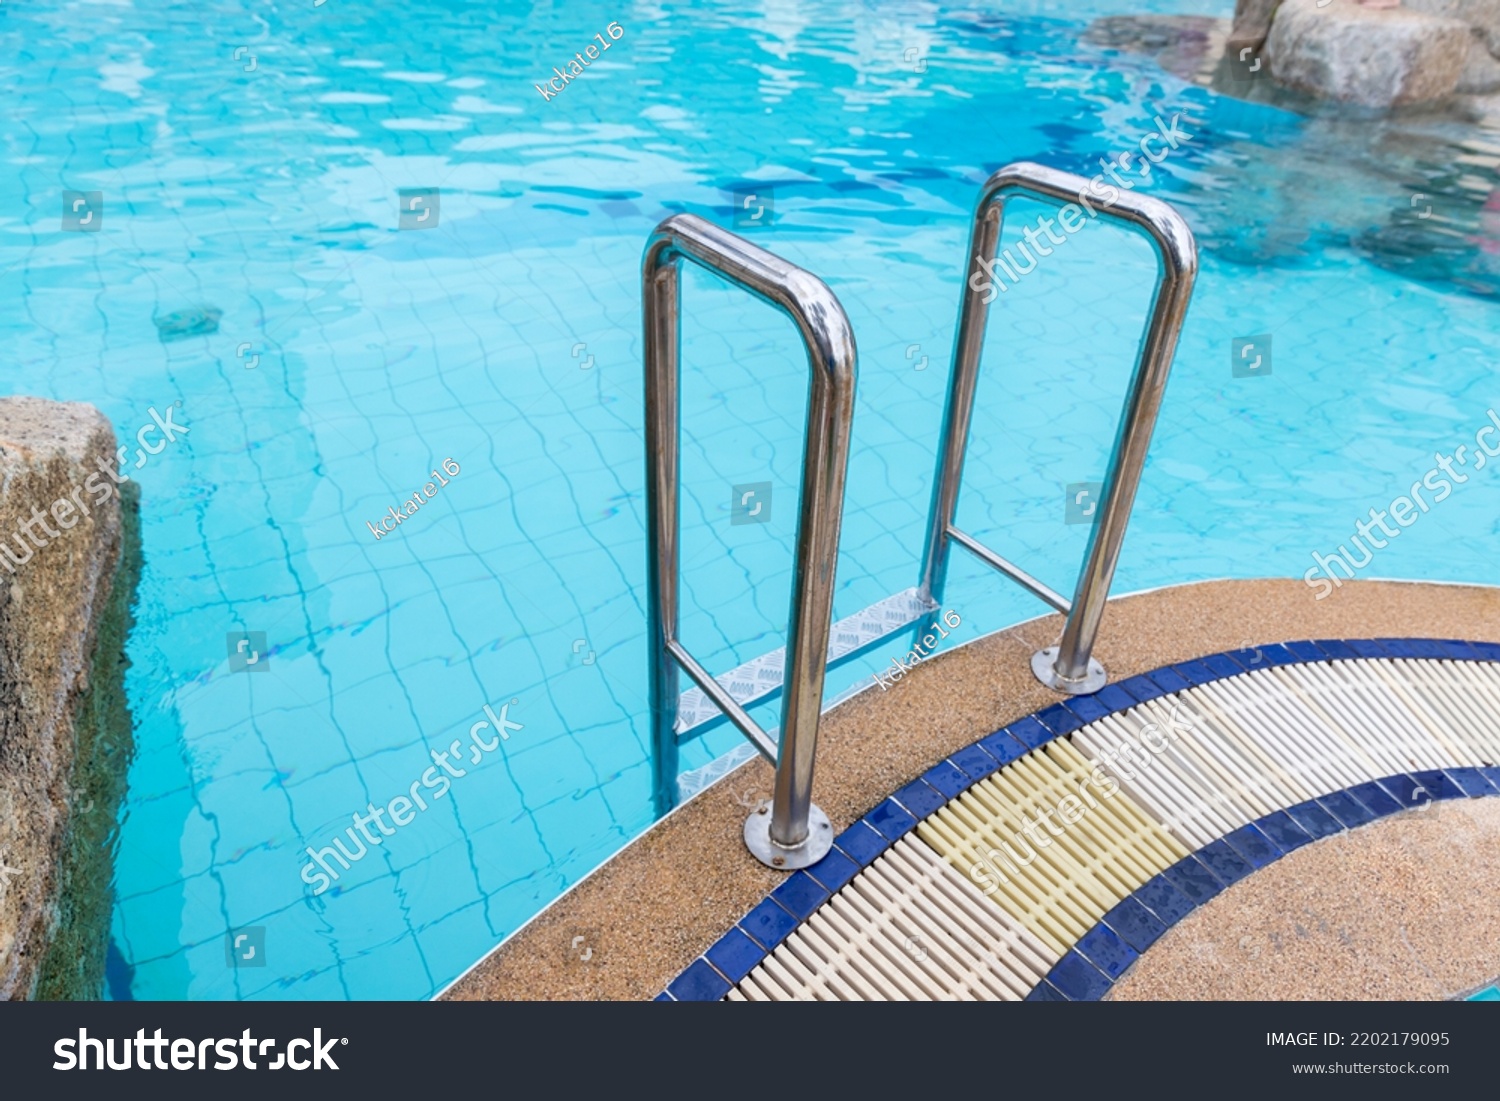 スイミングプールへの降下用はしごステンレス手すり。 手すり付きプール。 プールのはしご。 水平ショット。写真素材1924048355   Shutterstock